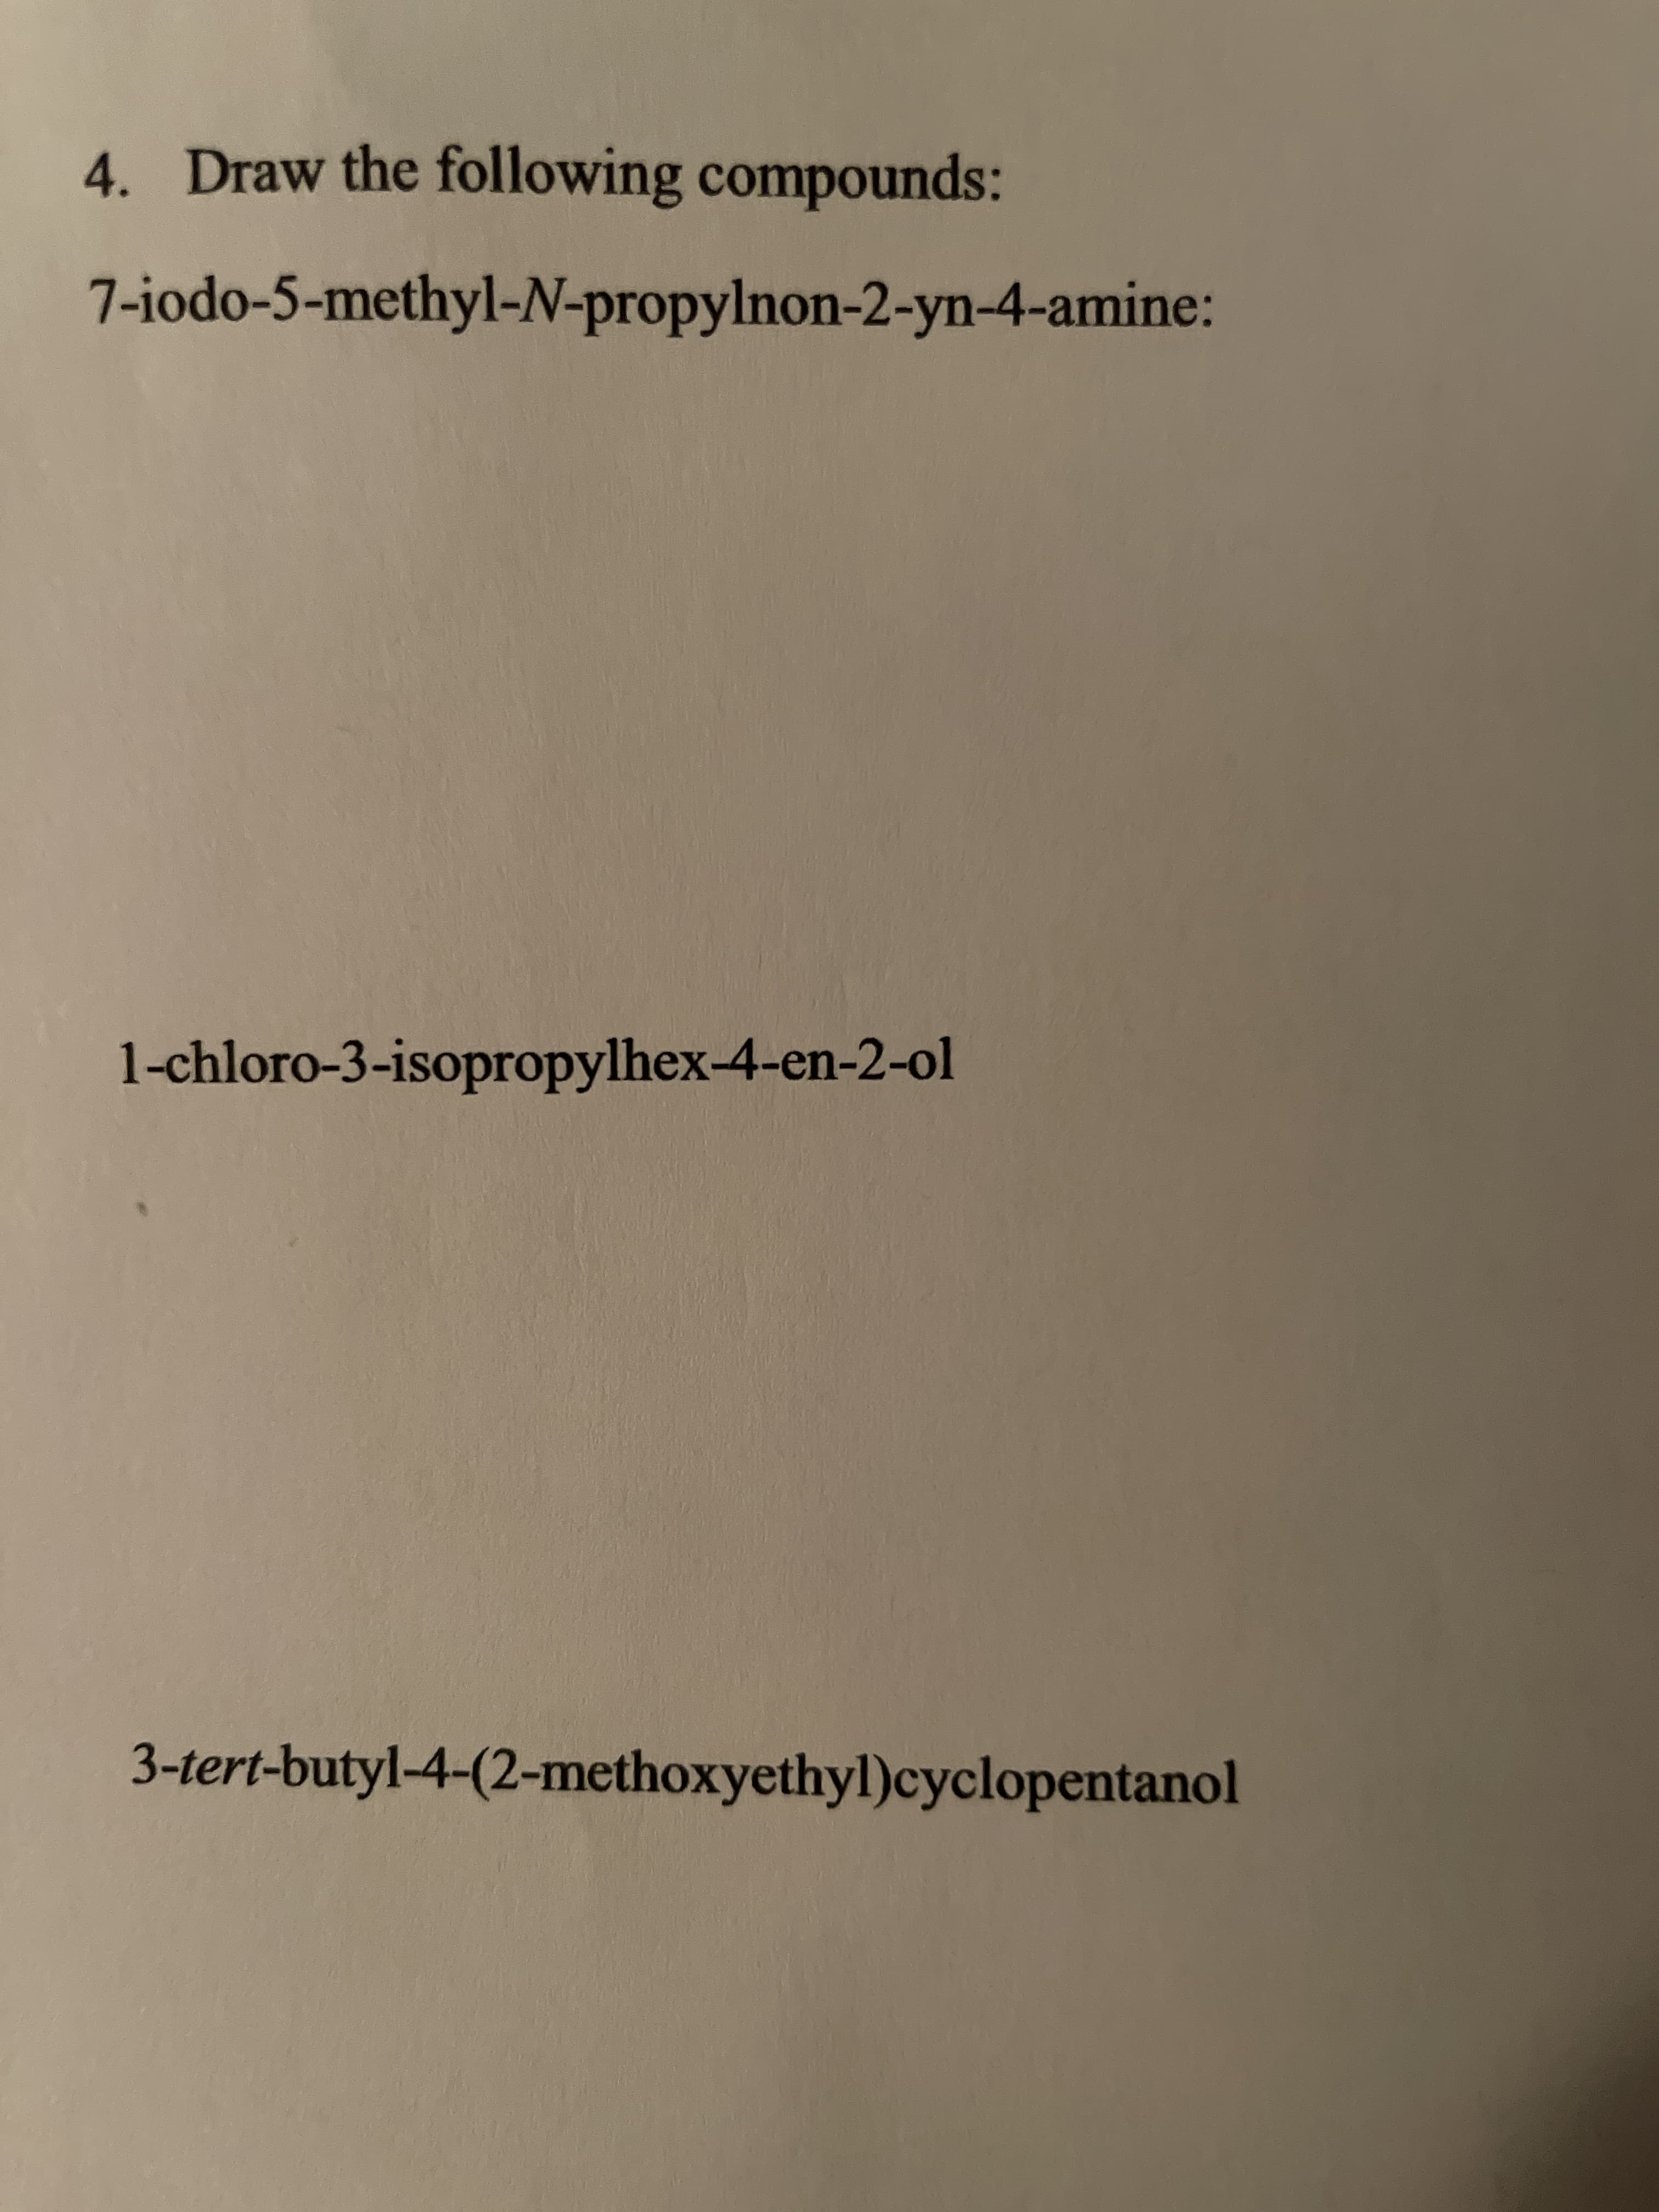 4. Draw the following compounds:
7-iodo-5-methyl-N-propylnon-2-yn-4-amine:
1-chloro-3-isopropylhex-4-en-2-ol
3-tert-butyl-4-(2-methoxyethyl)cyclopentanol
